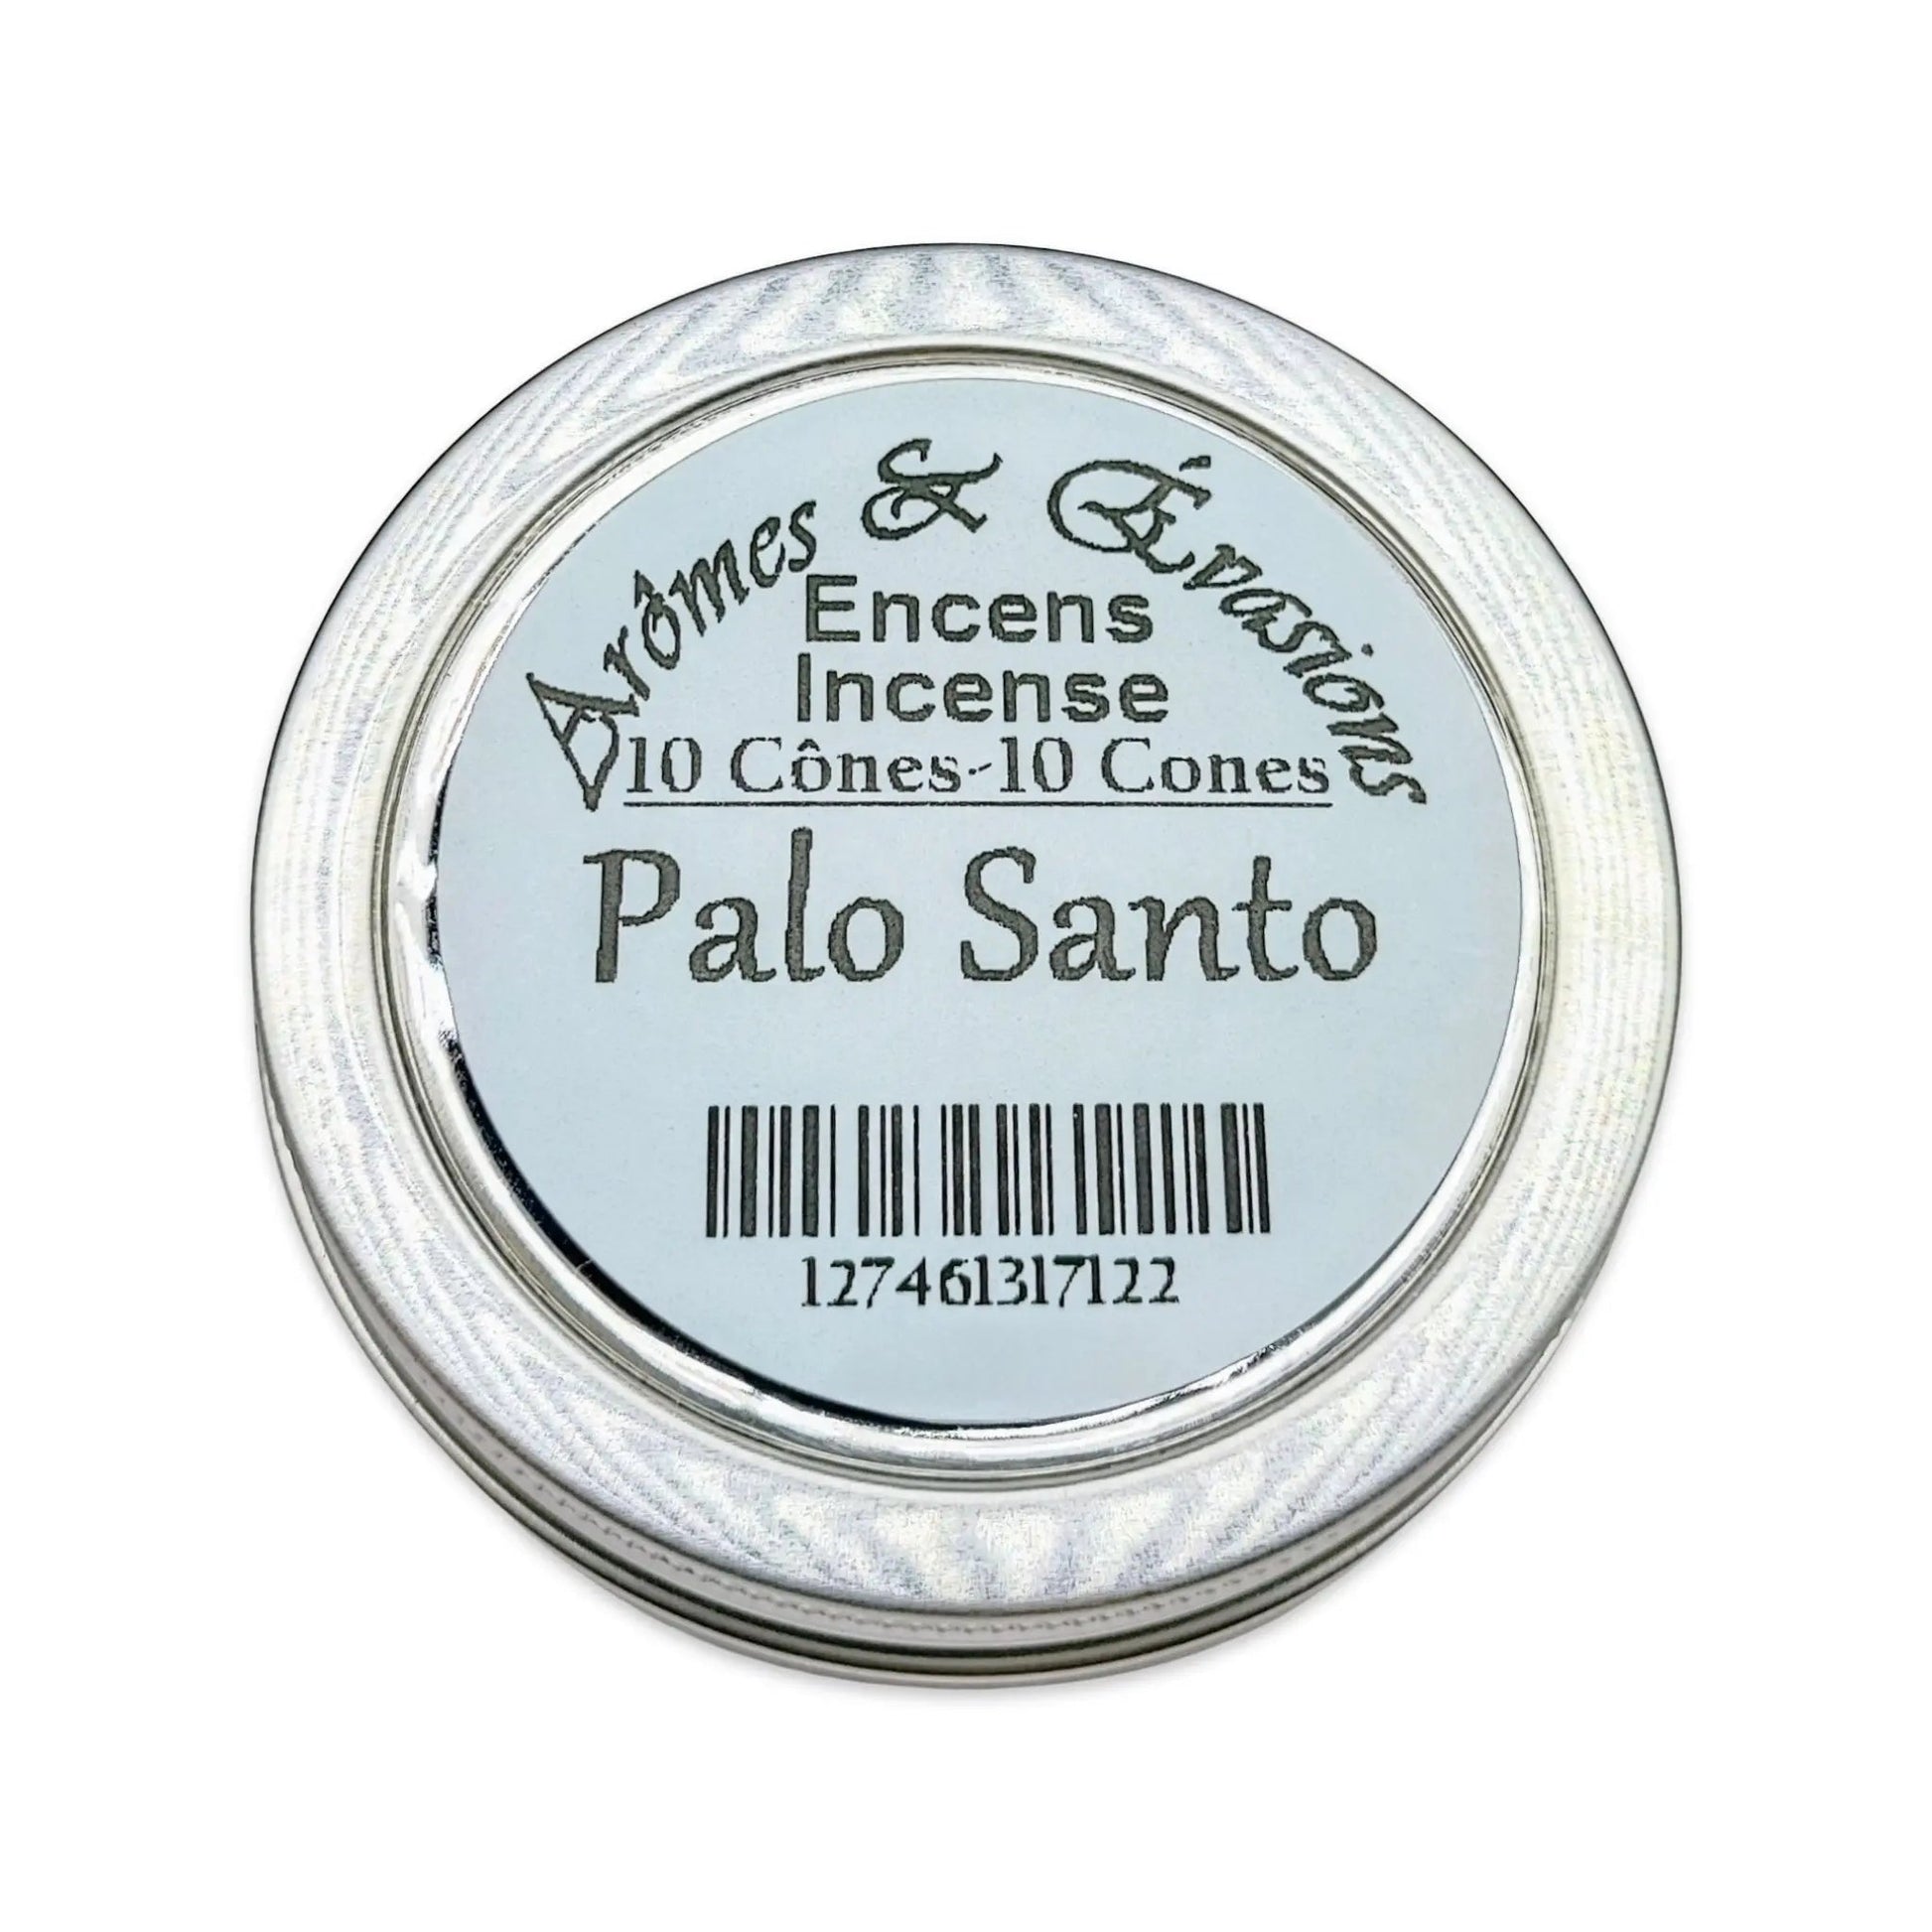 Incense Cones -Palo Santo -10 Cones -Cone -Aromes Evasions 